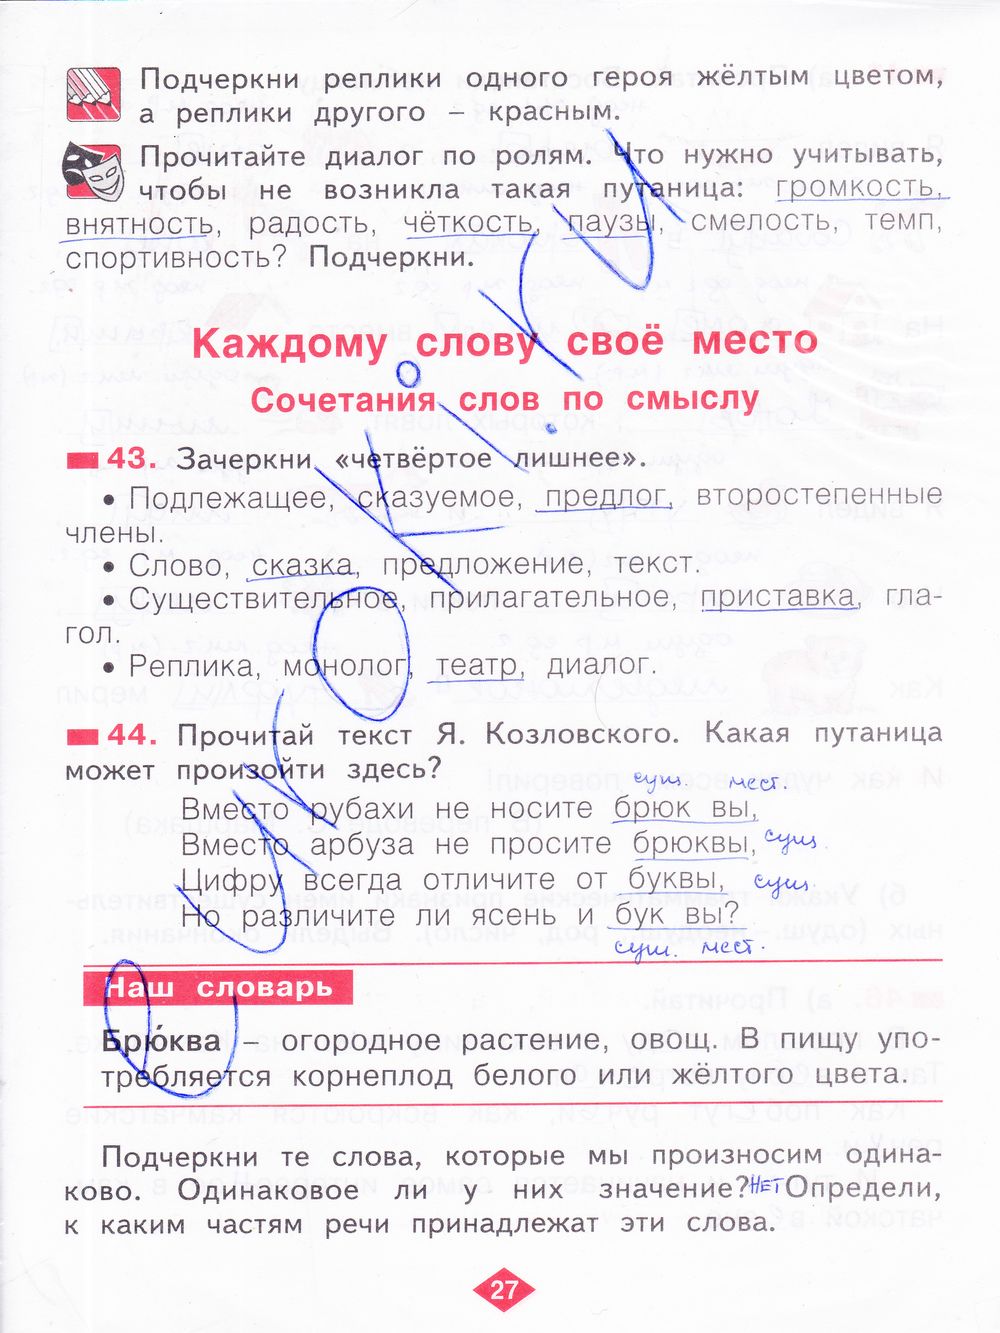 ГДЗ Русский язык 2 класс - стр. 27